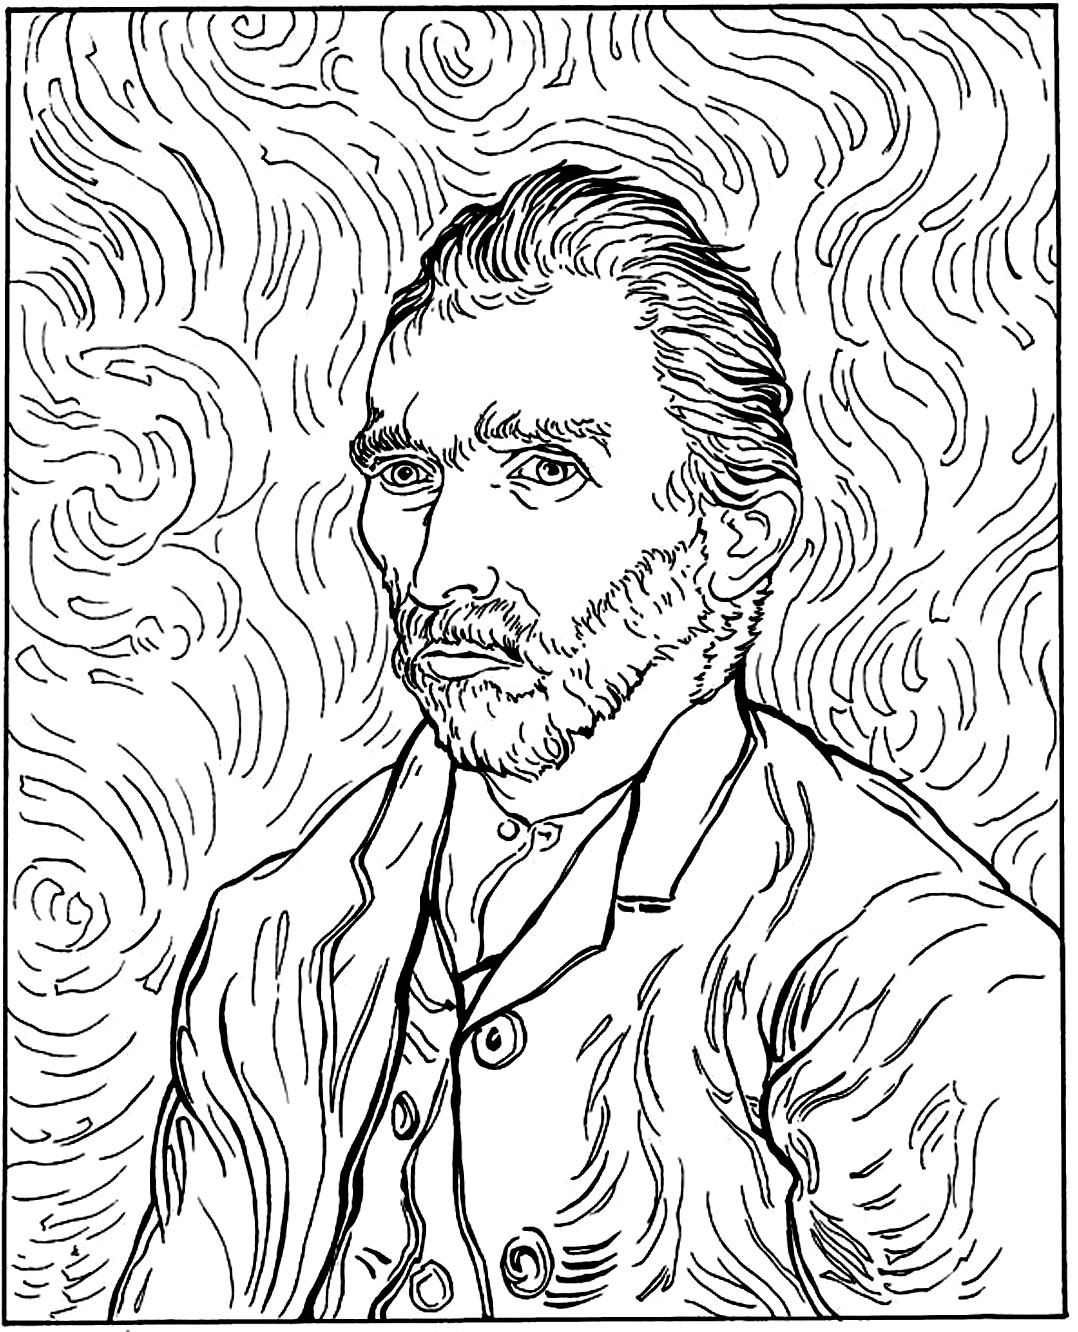 Van Gogh - Autorretrato (1889). Colorea a Vincent Van Gogh en uno de sus famosos autorretratos, pintado en 1889.
